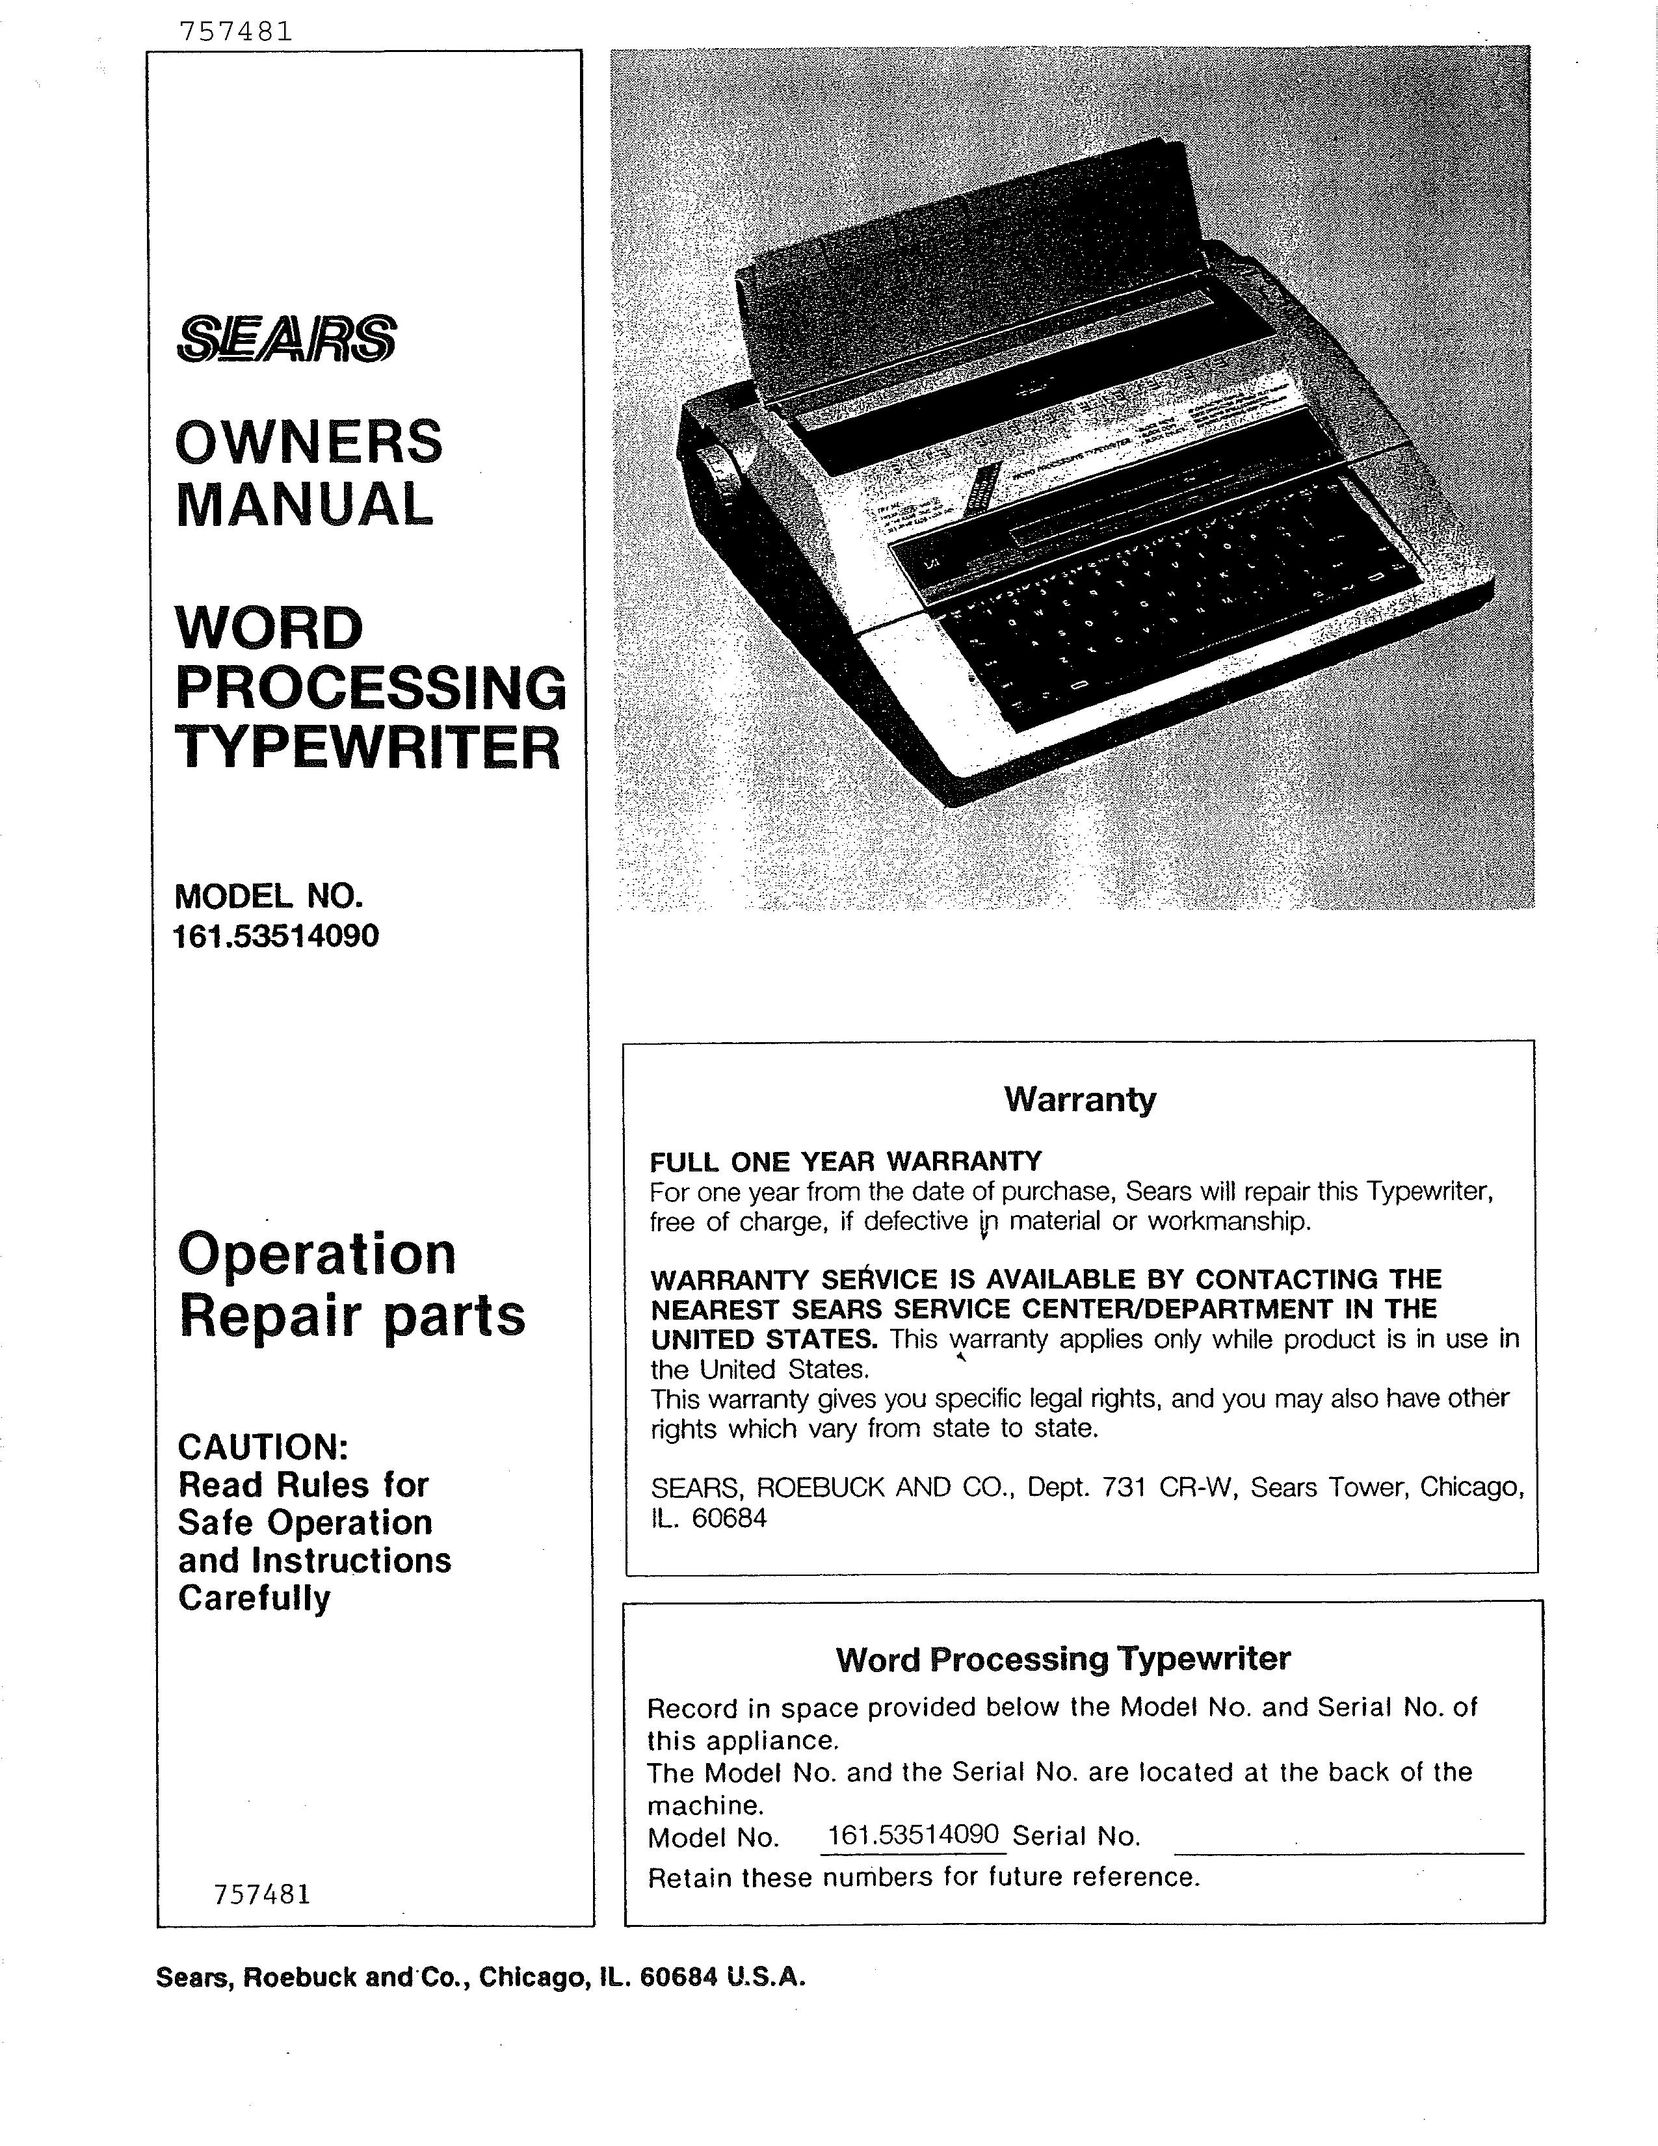 Sears 514 Typewriter User Manual